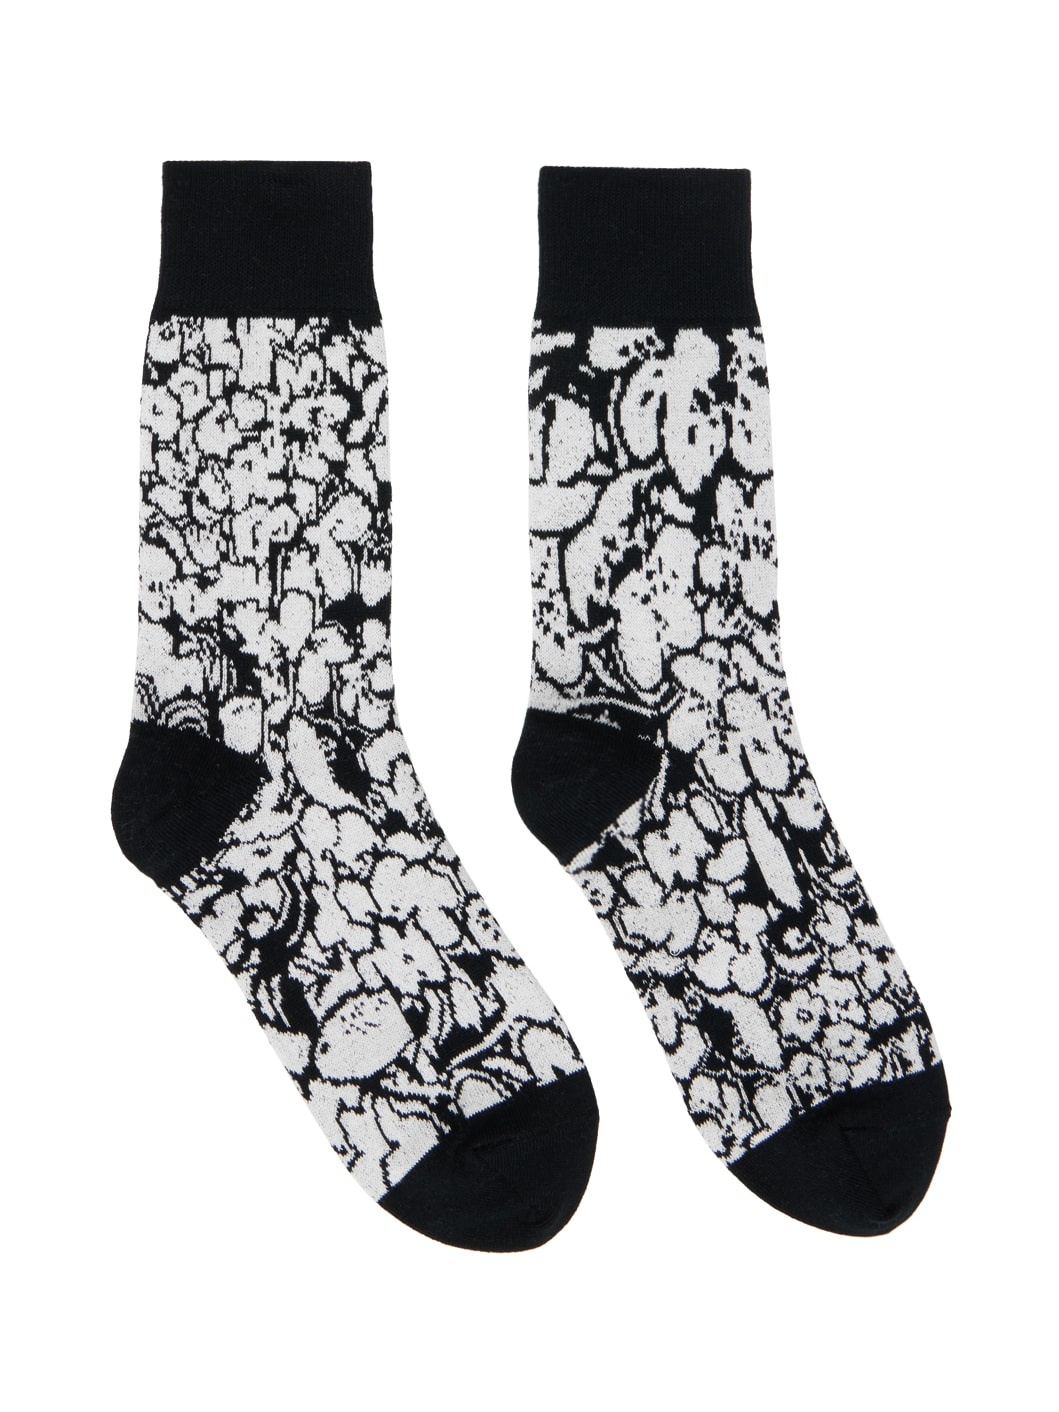 Black & White Floral Socks - 1